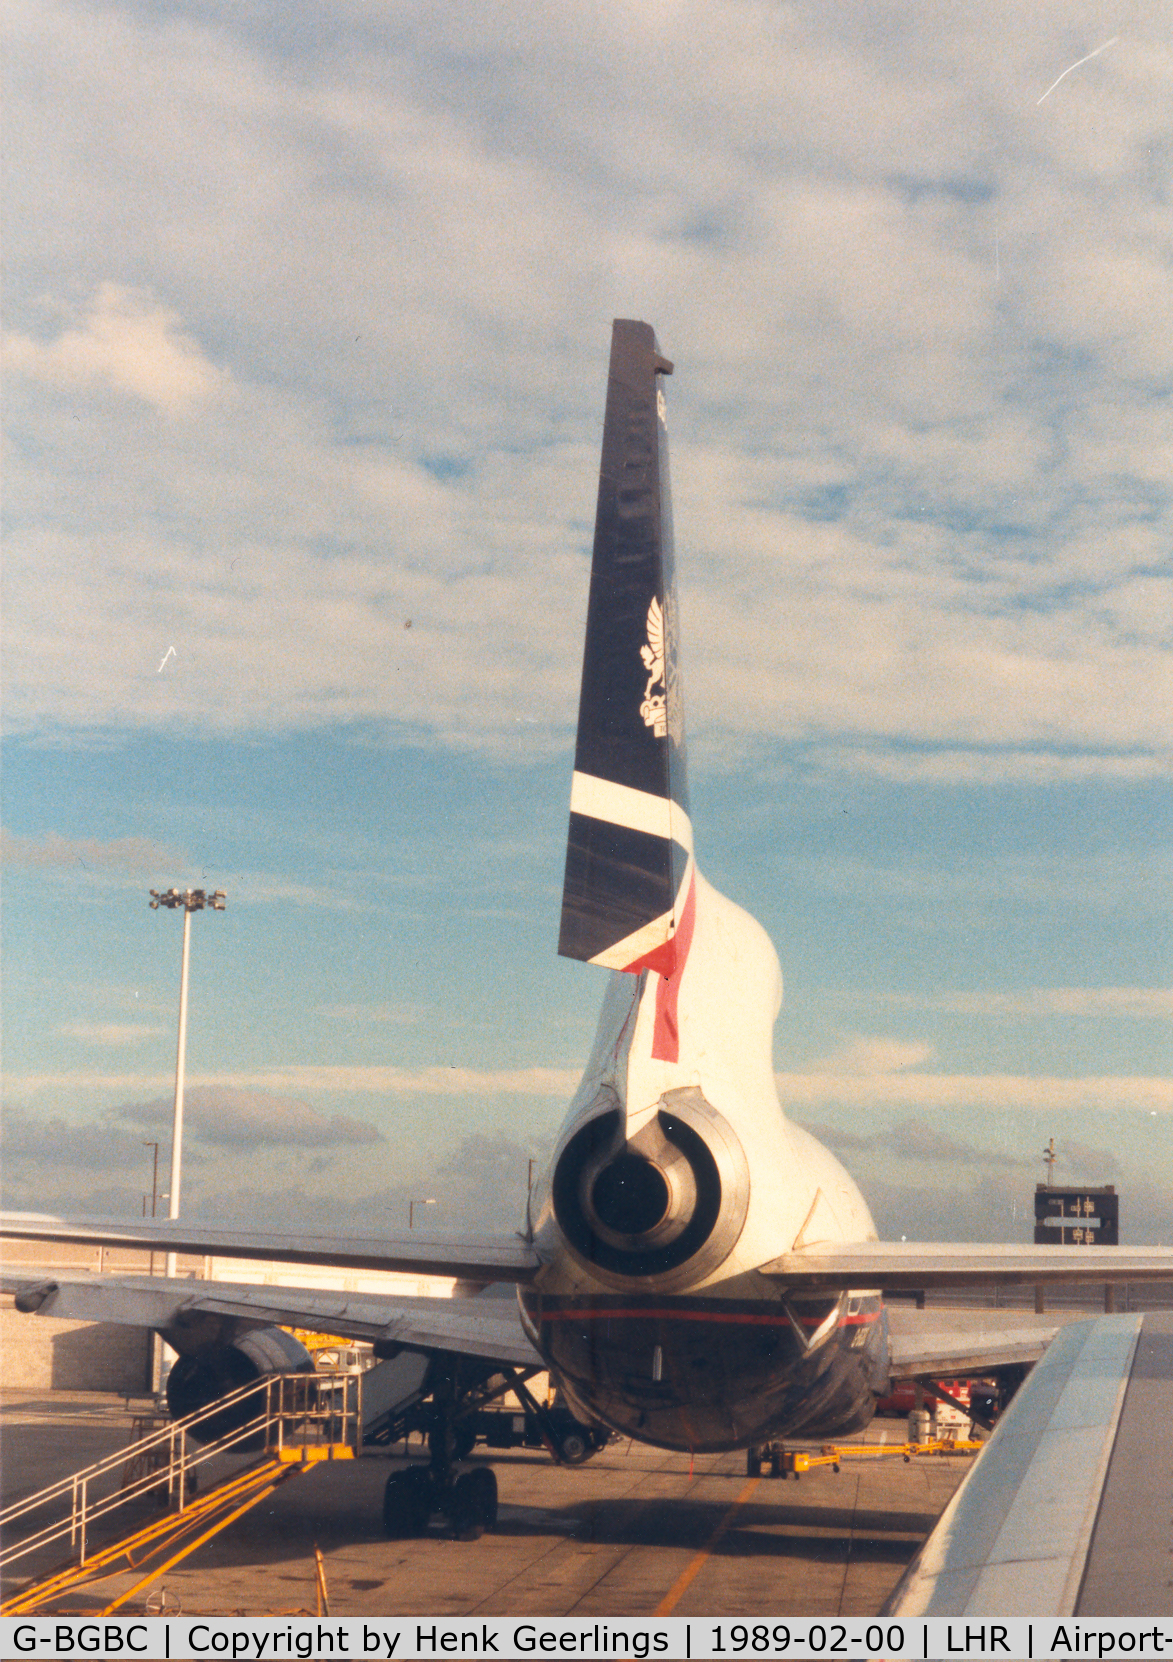 G-BGBC, 1980 Lockheed L-1011-385-1-15 TriStar 100 C/N 193N-1182, British Airways